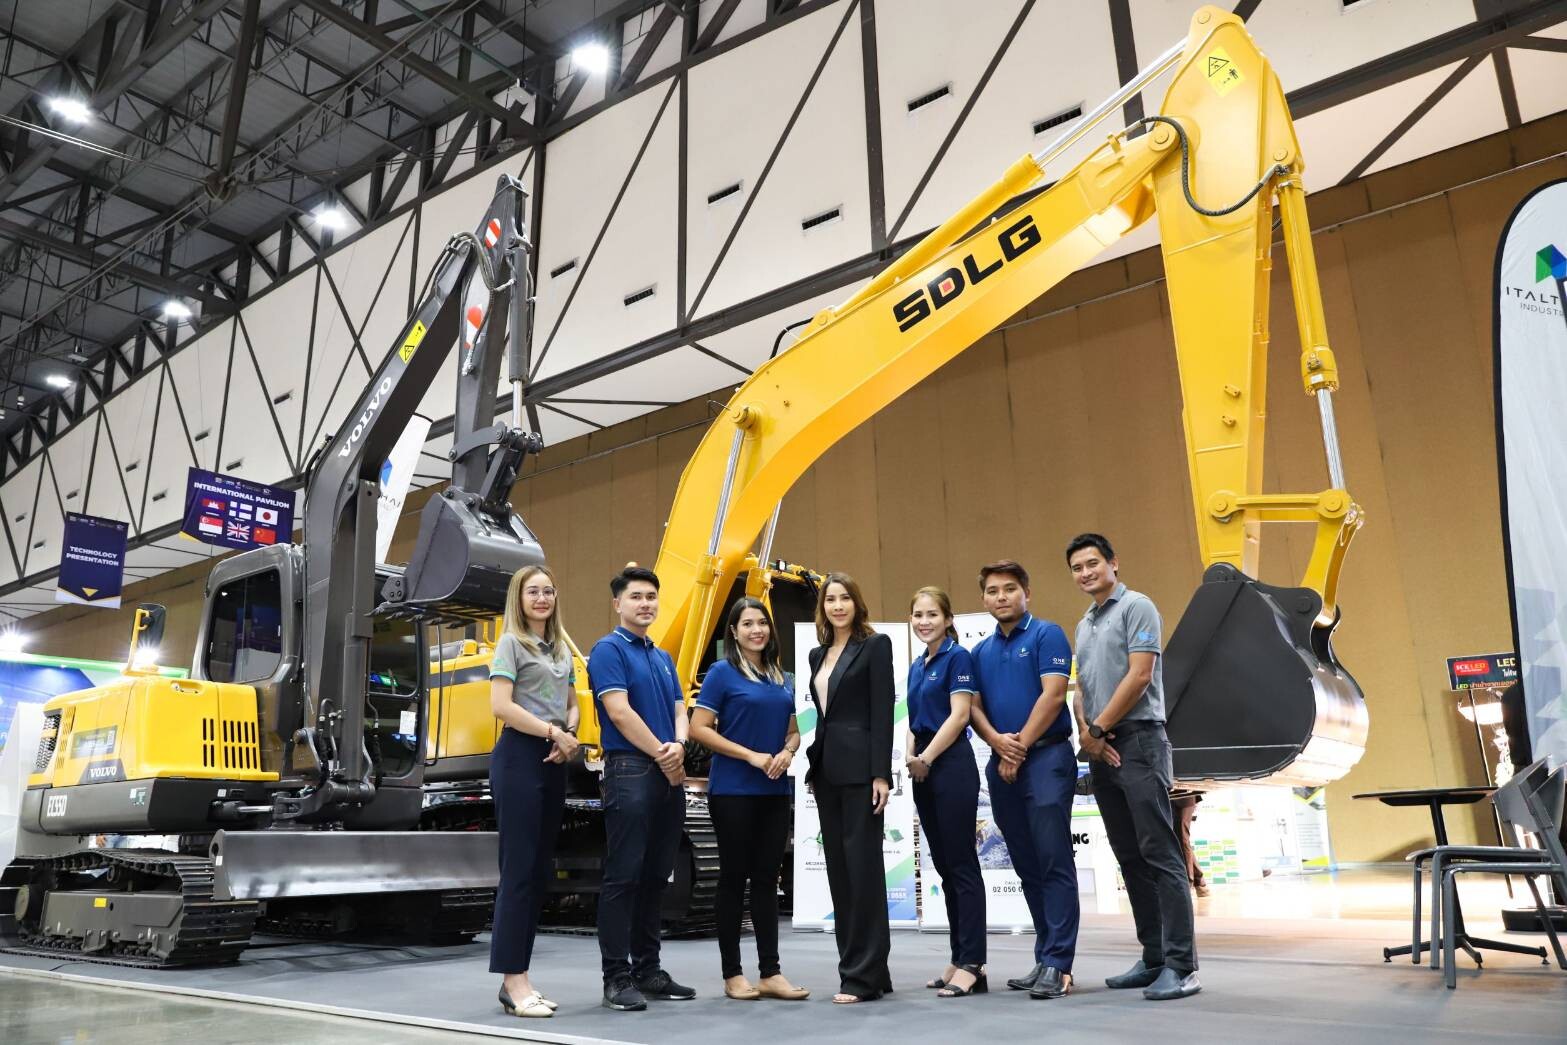 อิตัลไทยอุตสาหกรรม โชว์ศักยภาพผู้นำด้านเทคนิค วิศวกรรม และนำเข้าเครื่องจักร อวดโฉมรถขุดขนาด 20 ตัน, เครนแมงมุม พร้อมเทคโนโลยีเครื่องจักรไฟฟ้า ในงาน BCT Expo 2022